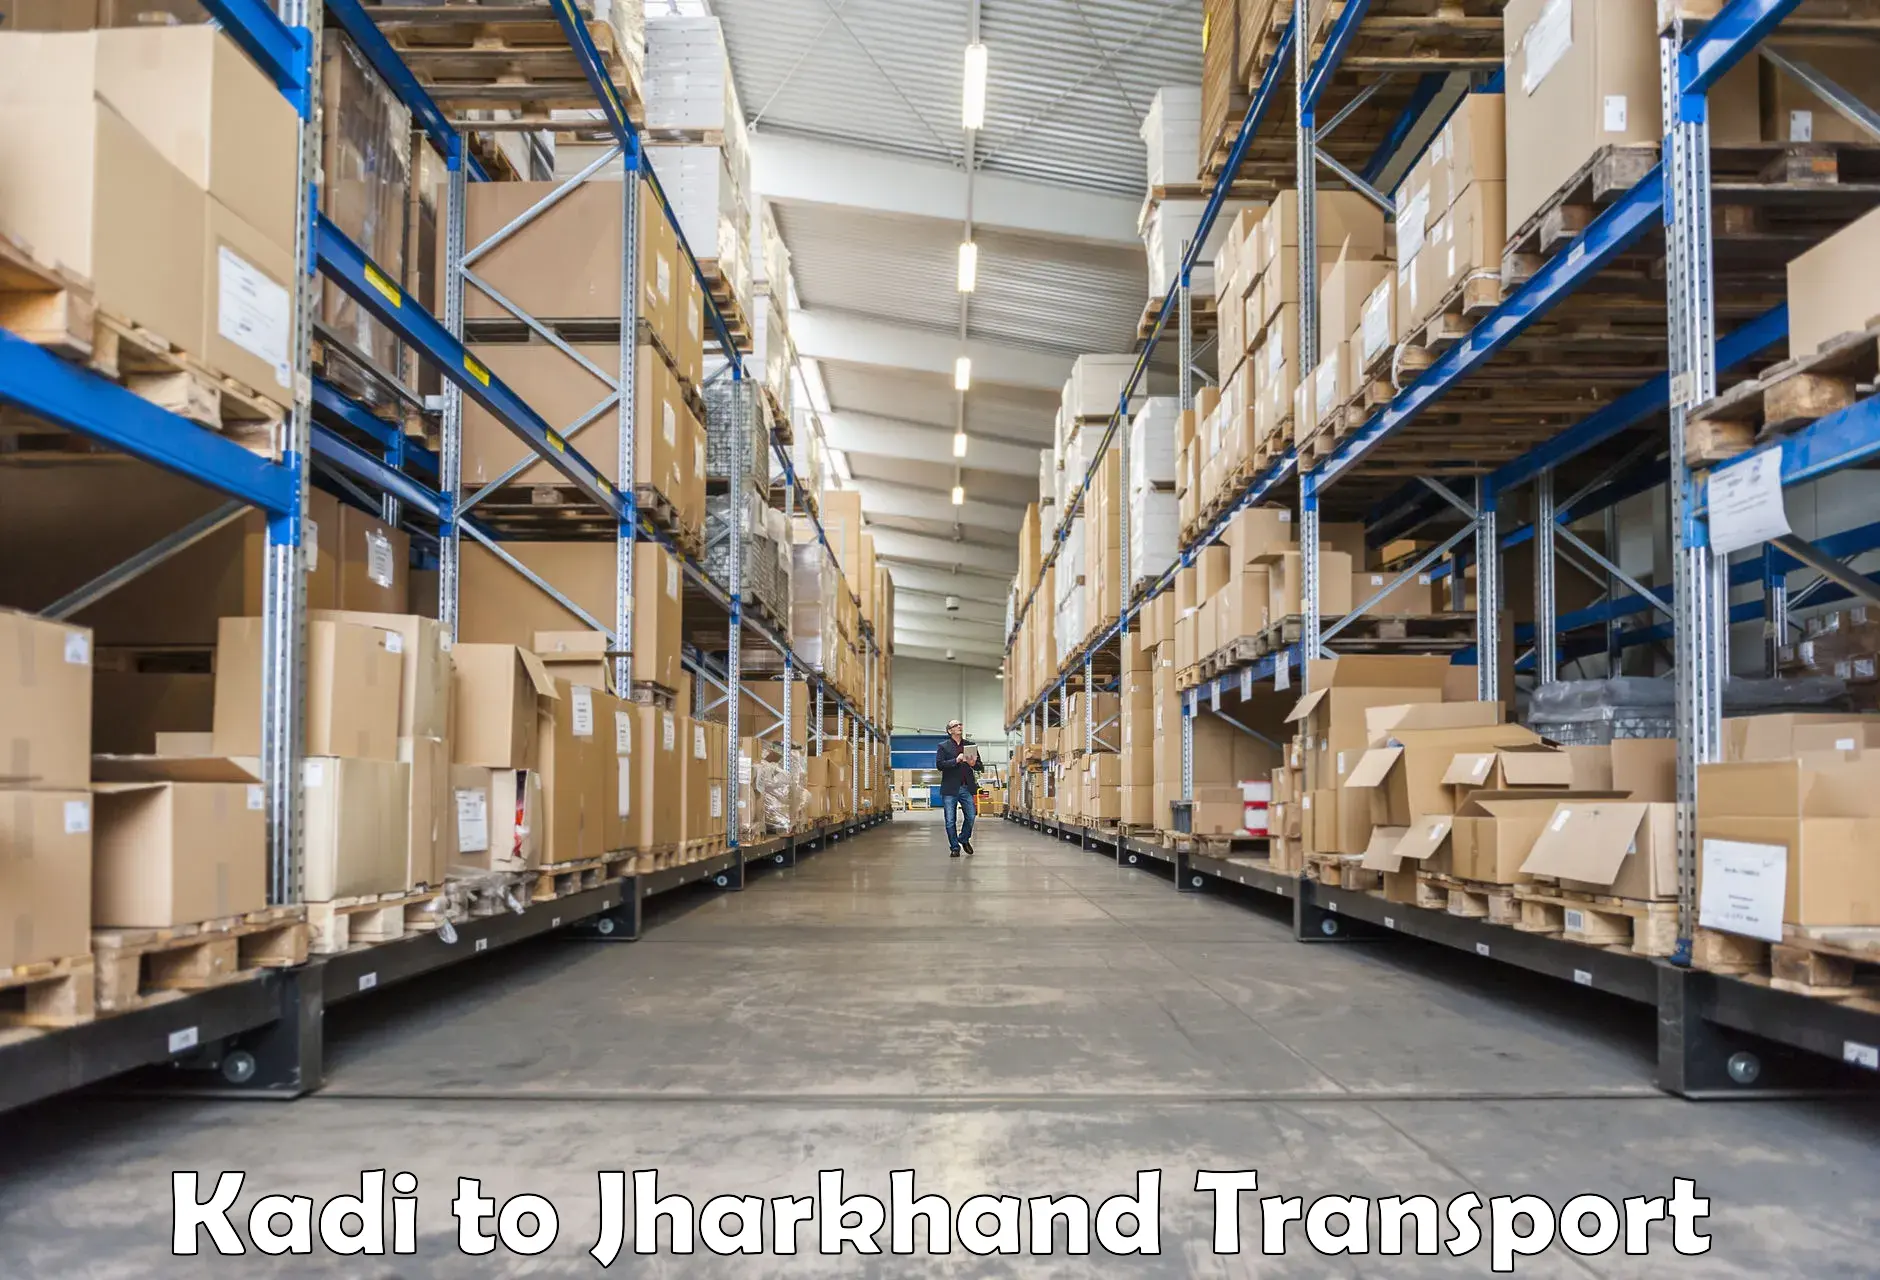 Shipping partner Kadi to Hariharganj